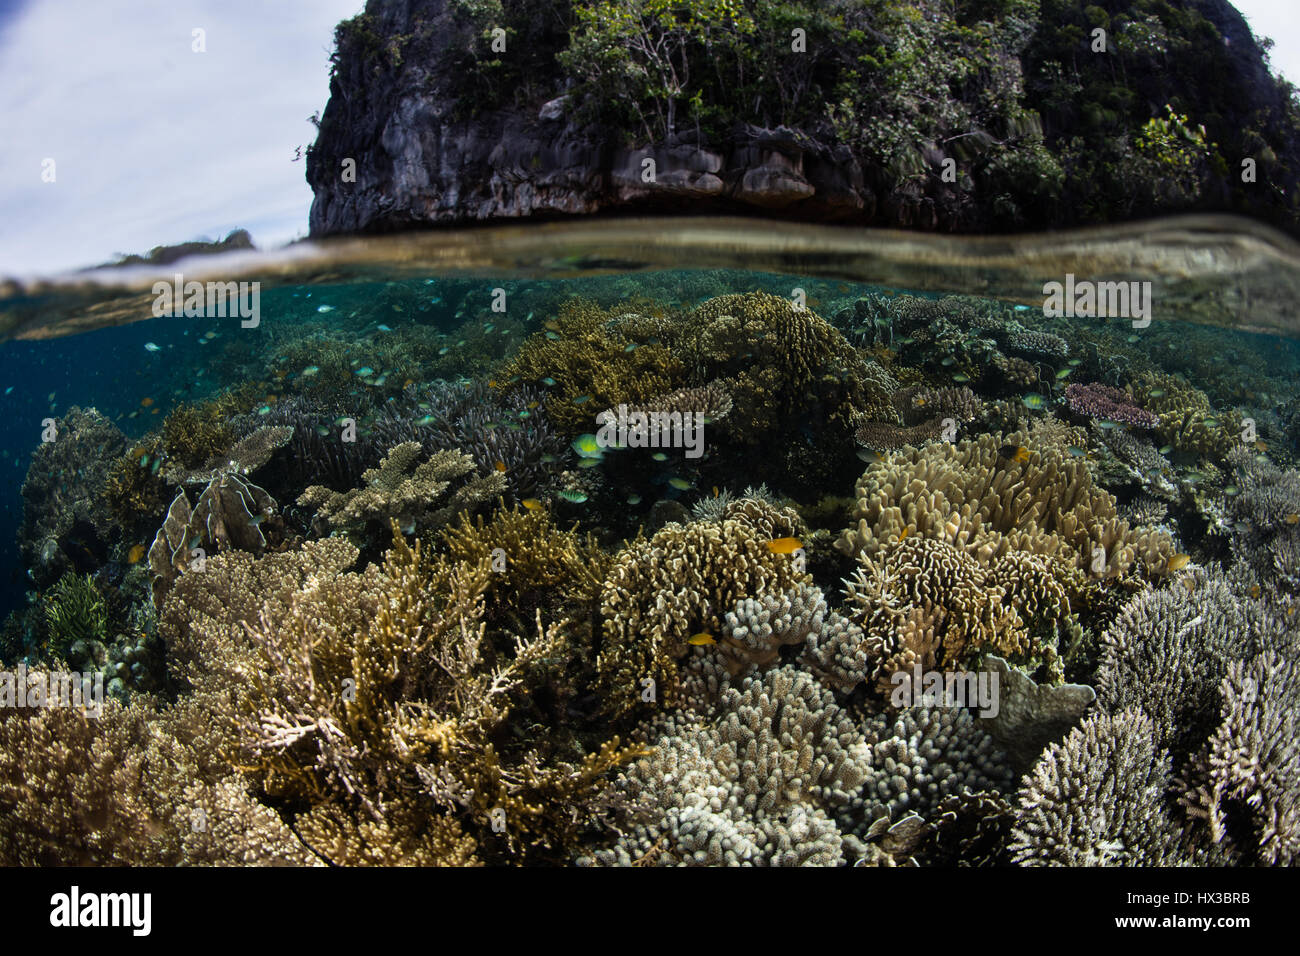 Ein gesundes Korallenriff wächst in Raja Ampat, Indonesien. Dieser entlegenen Gegend ist bekannt für seine außergewöhnliche Artenvielfalt. Stockfoto